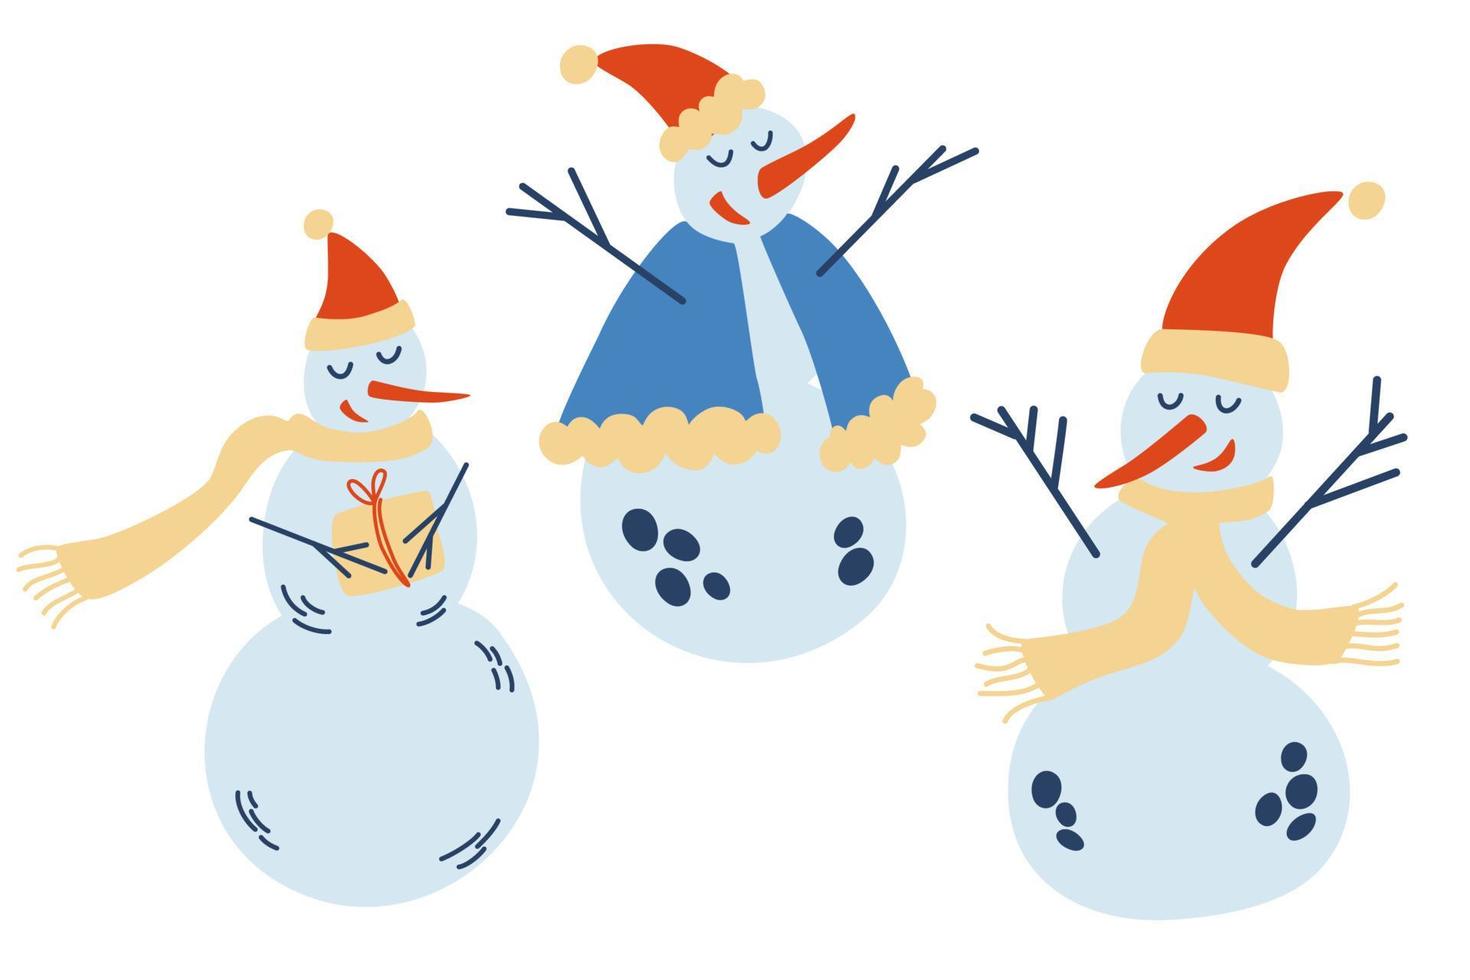 jolie collection de bonhommes de neige de Noël. bonhommes de neige drôles dans différentes poses chapeaux et écharpes. modèle du nouvel an pour la conception sur un thème de noël. illustration vectorielle hiver. vecteur